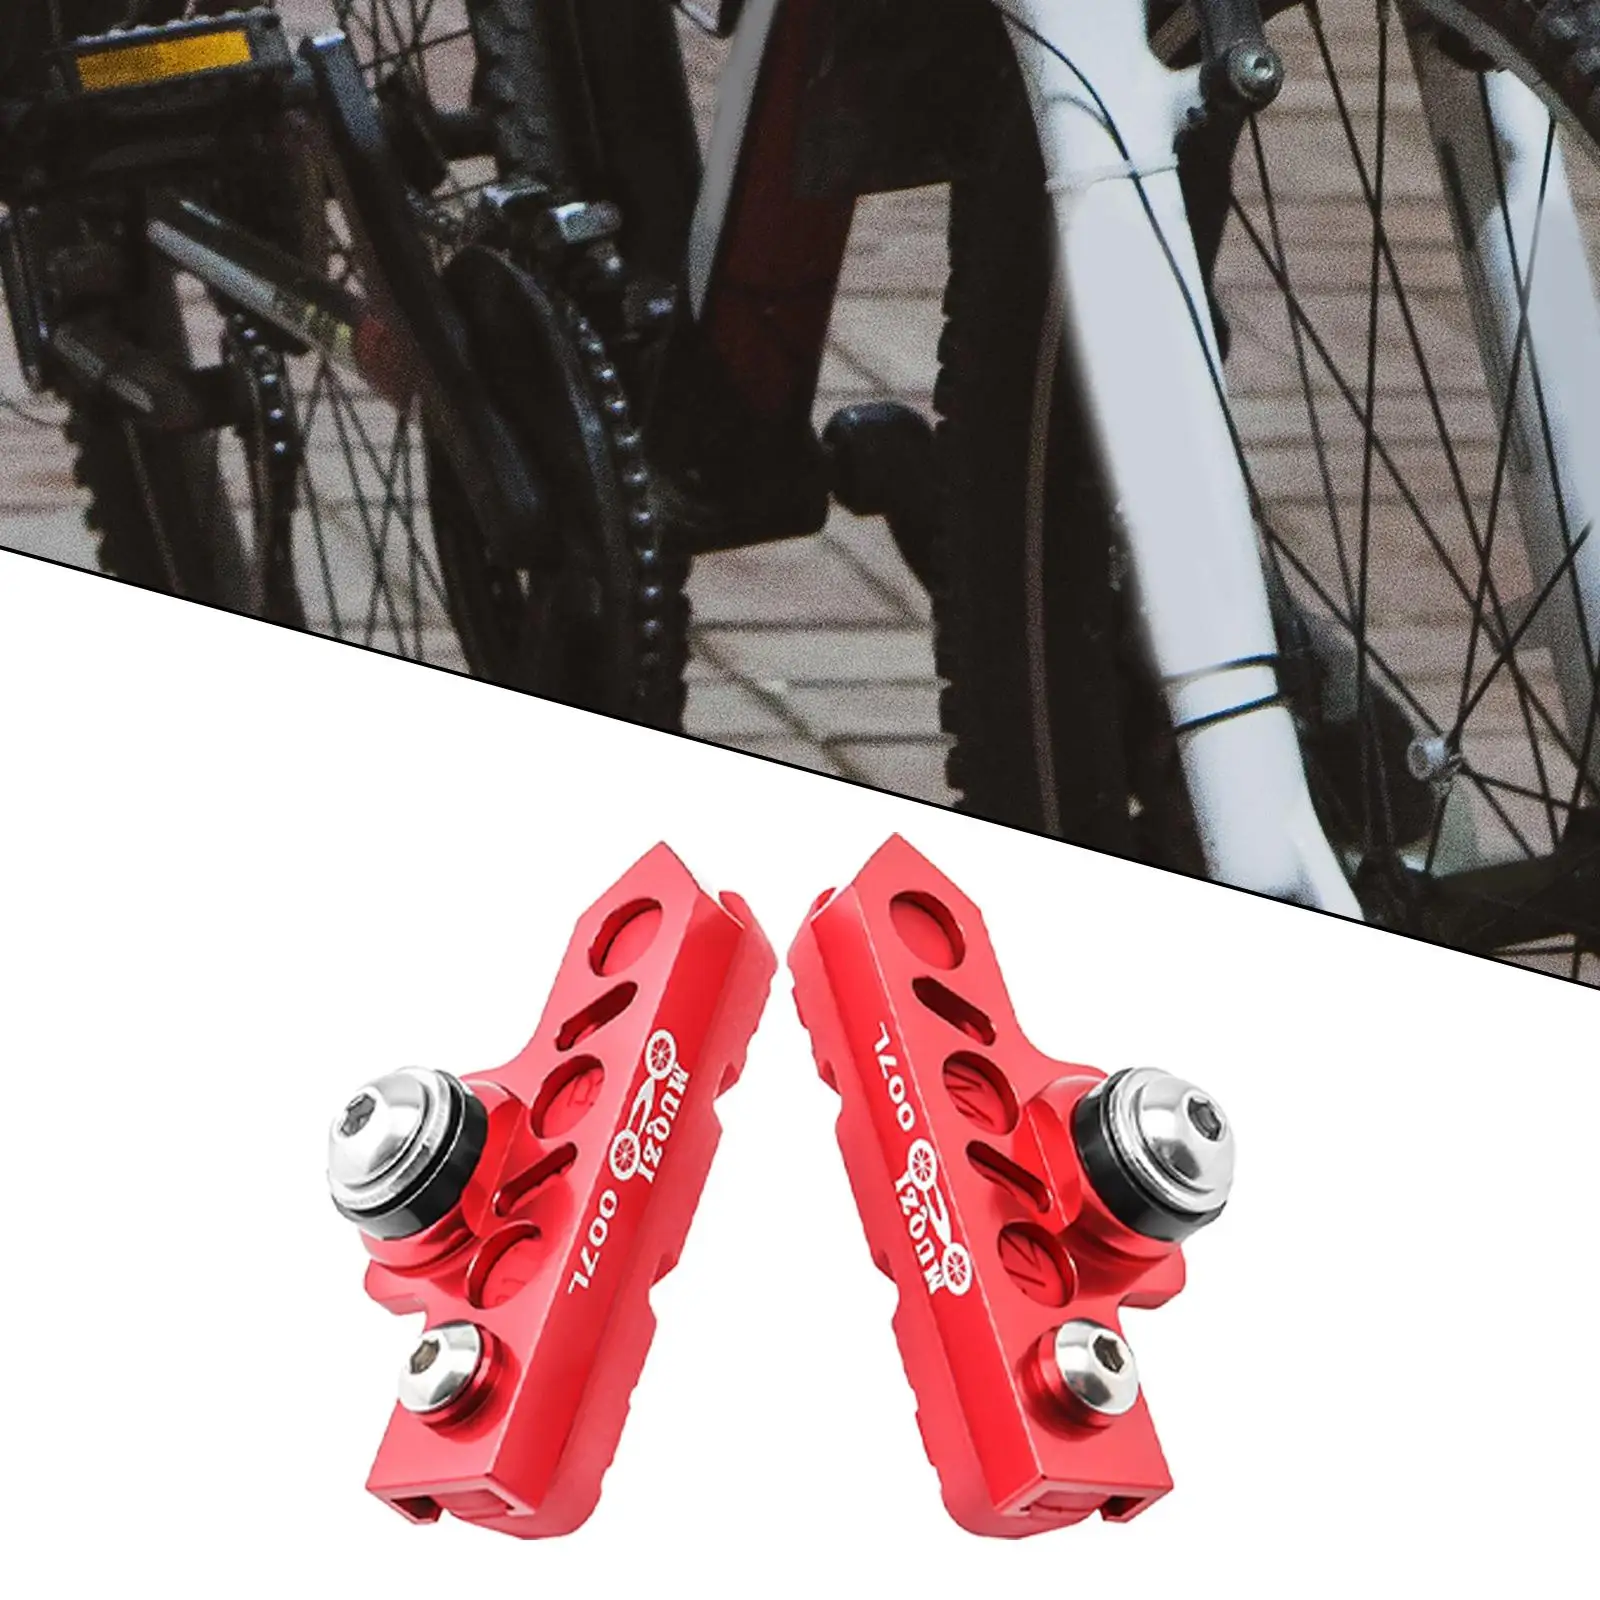 2 Pieces Durable Brake Blocks Shoes Drawer Type Bicycle Brake Pads Anti-Skid MTB BMX Bikes Replacement for Mountain Road Bike